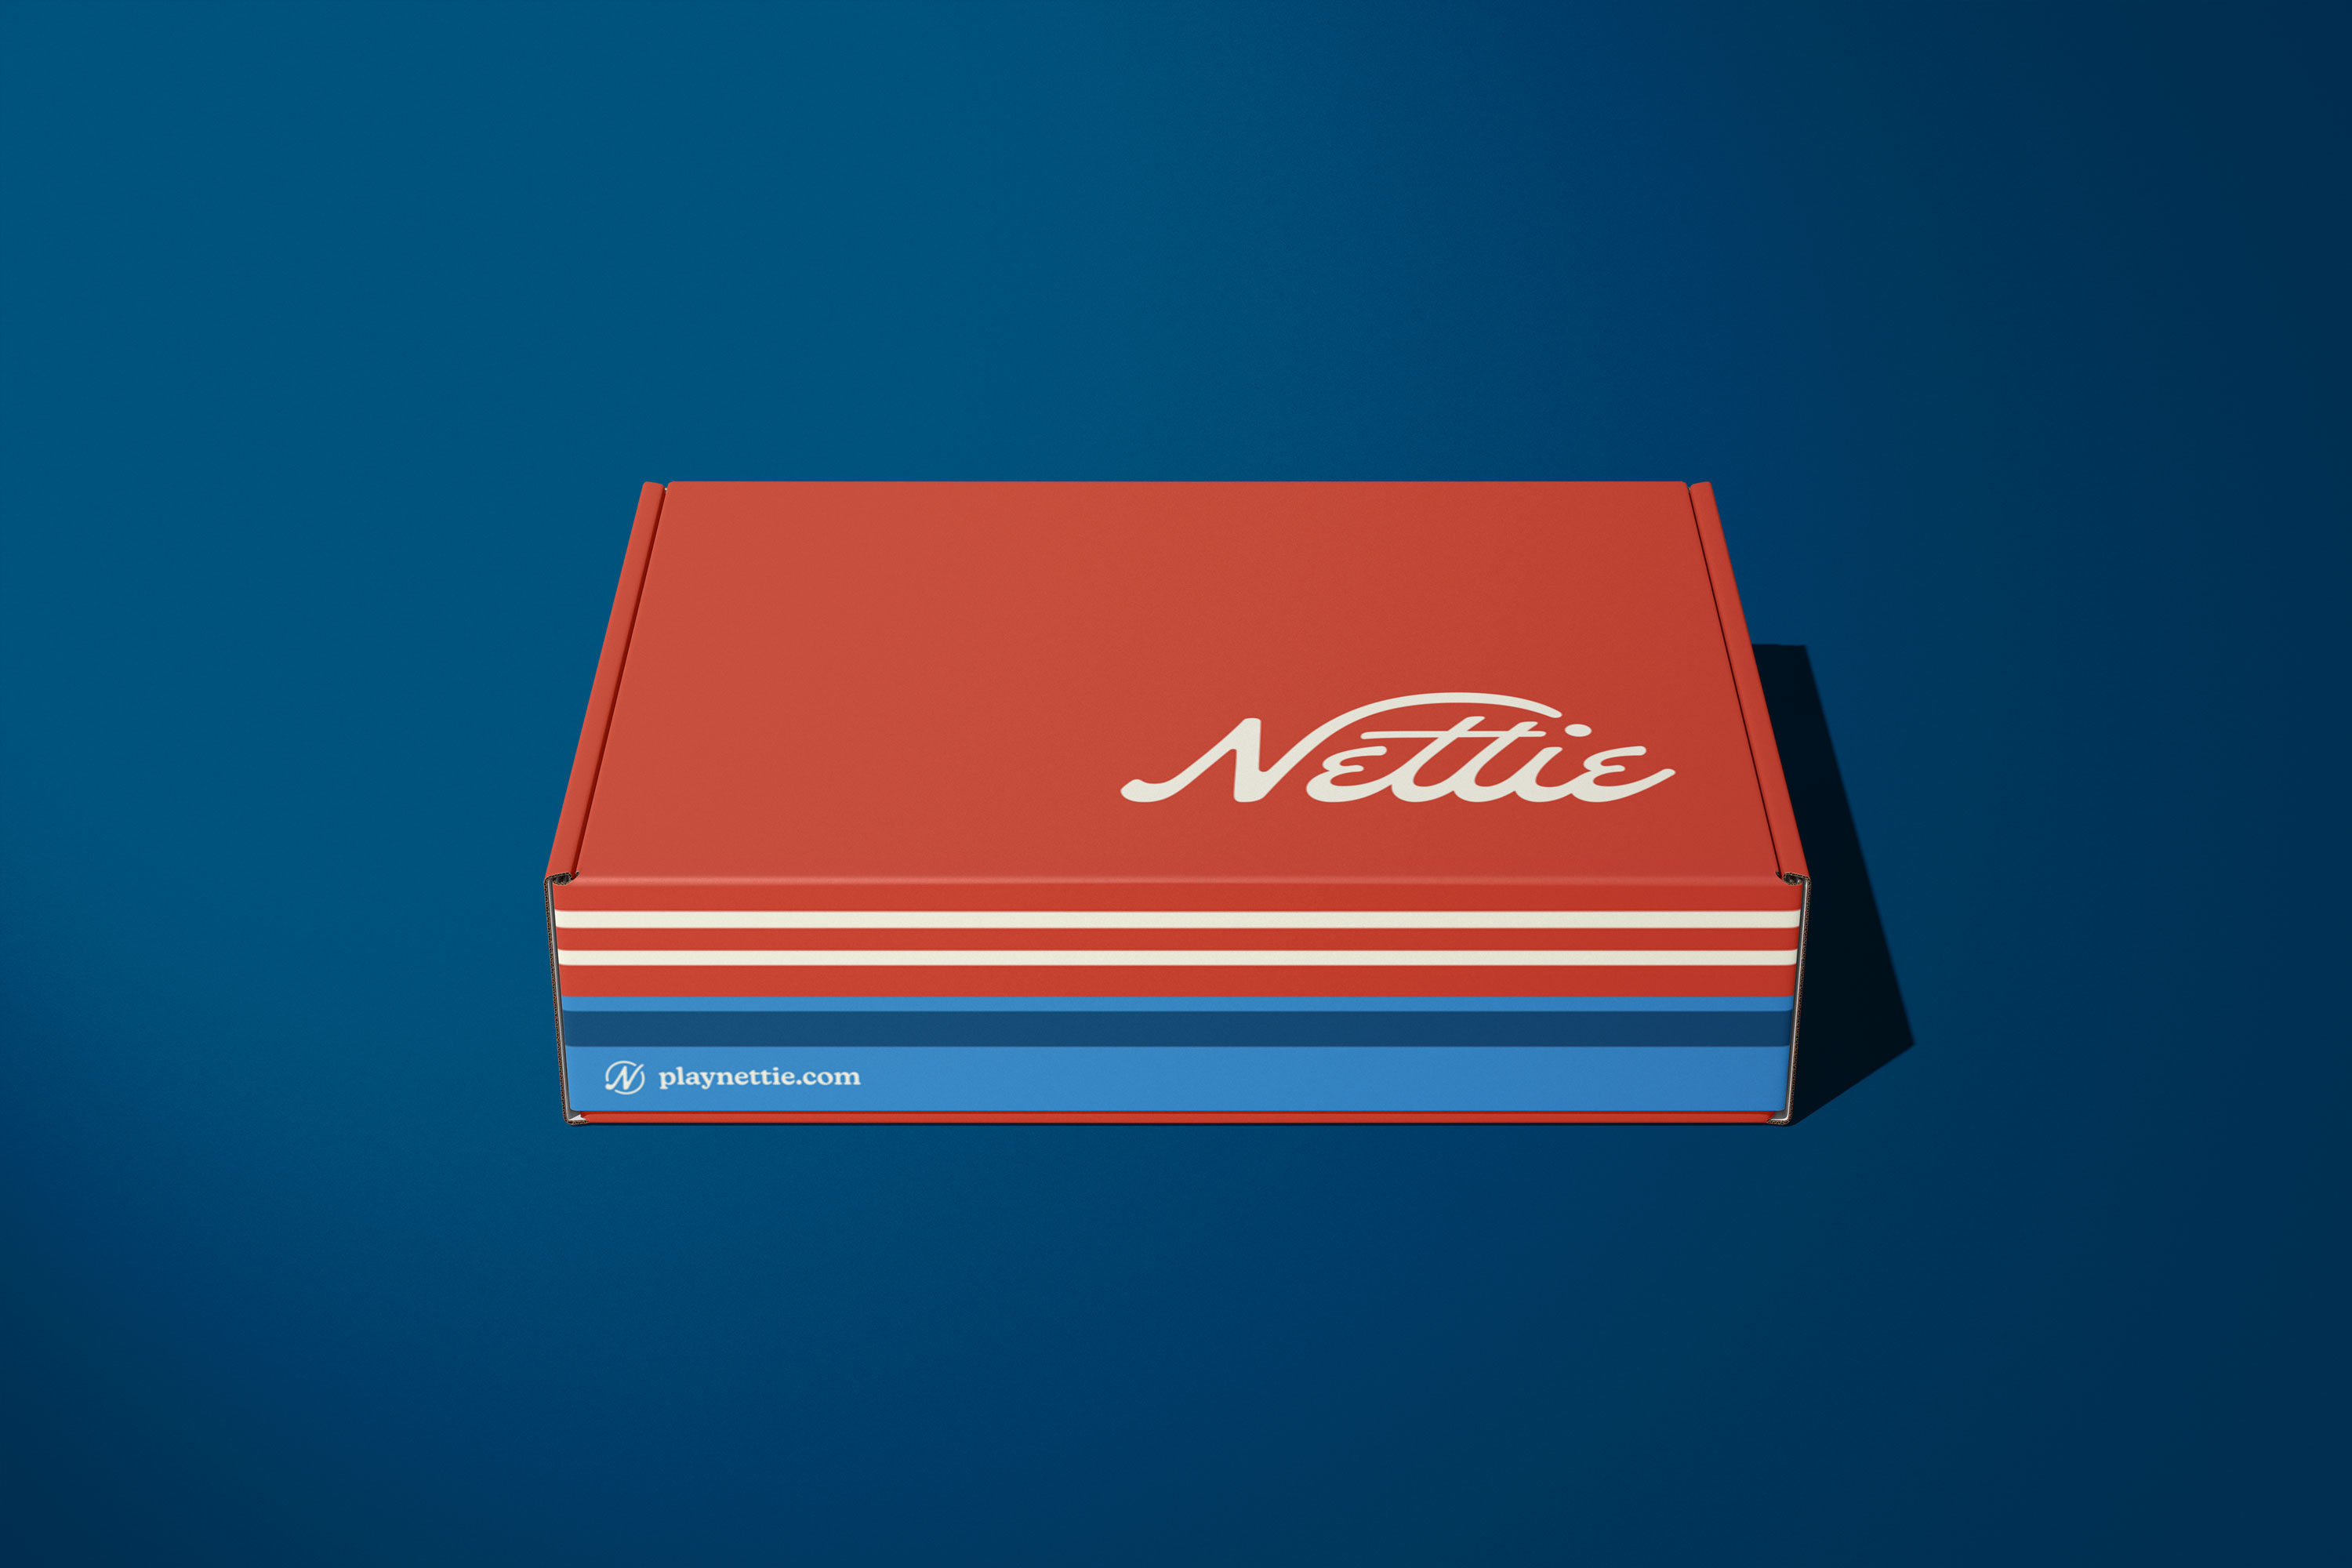 Nettie Pickleball Mailing Box design by Hoodzpah